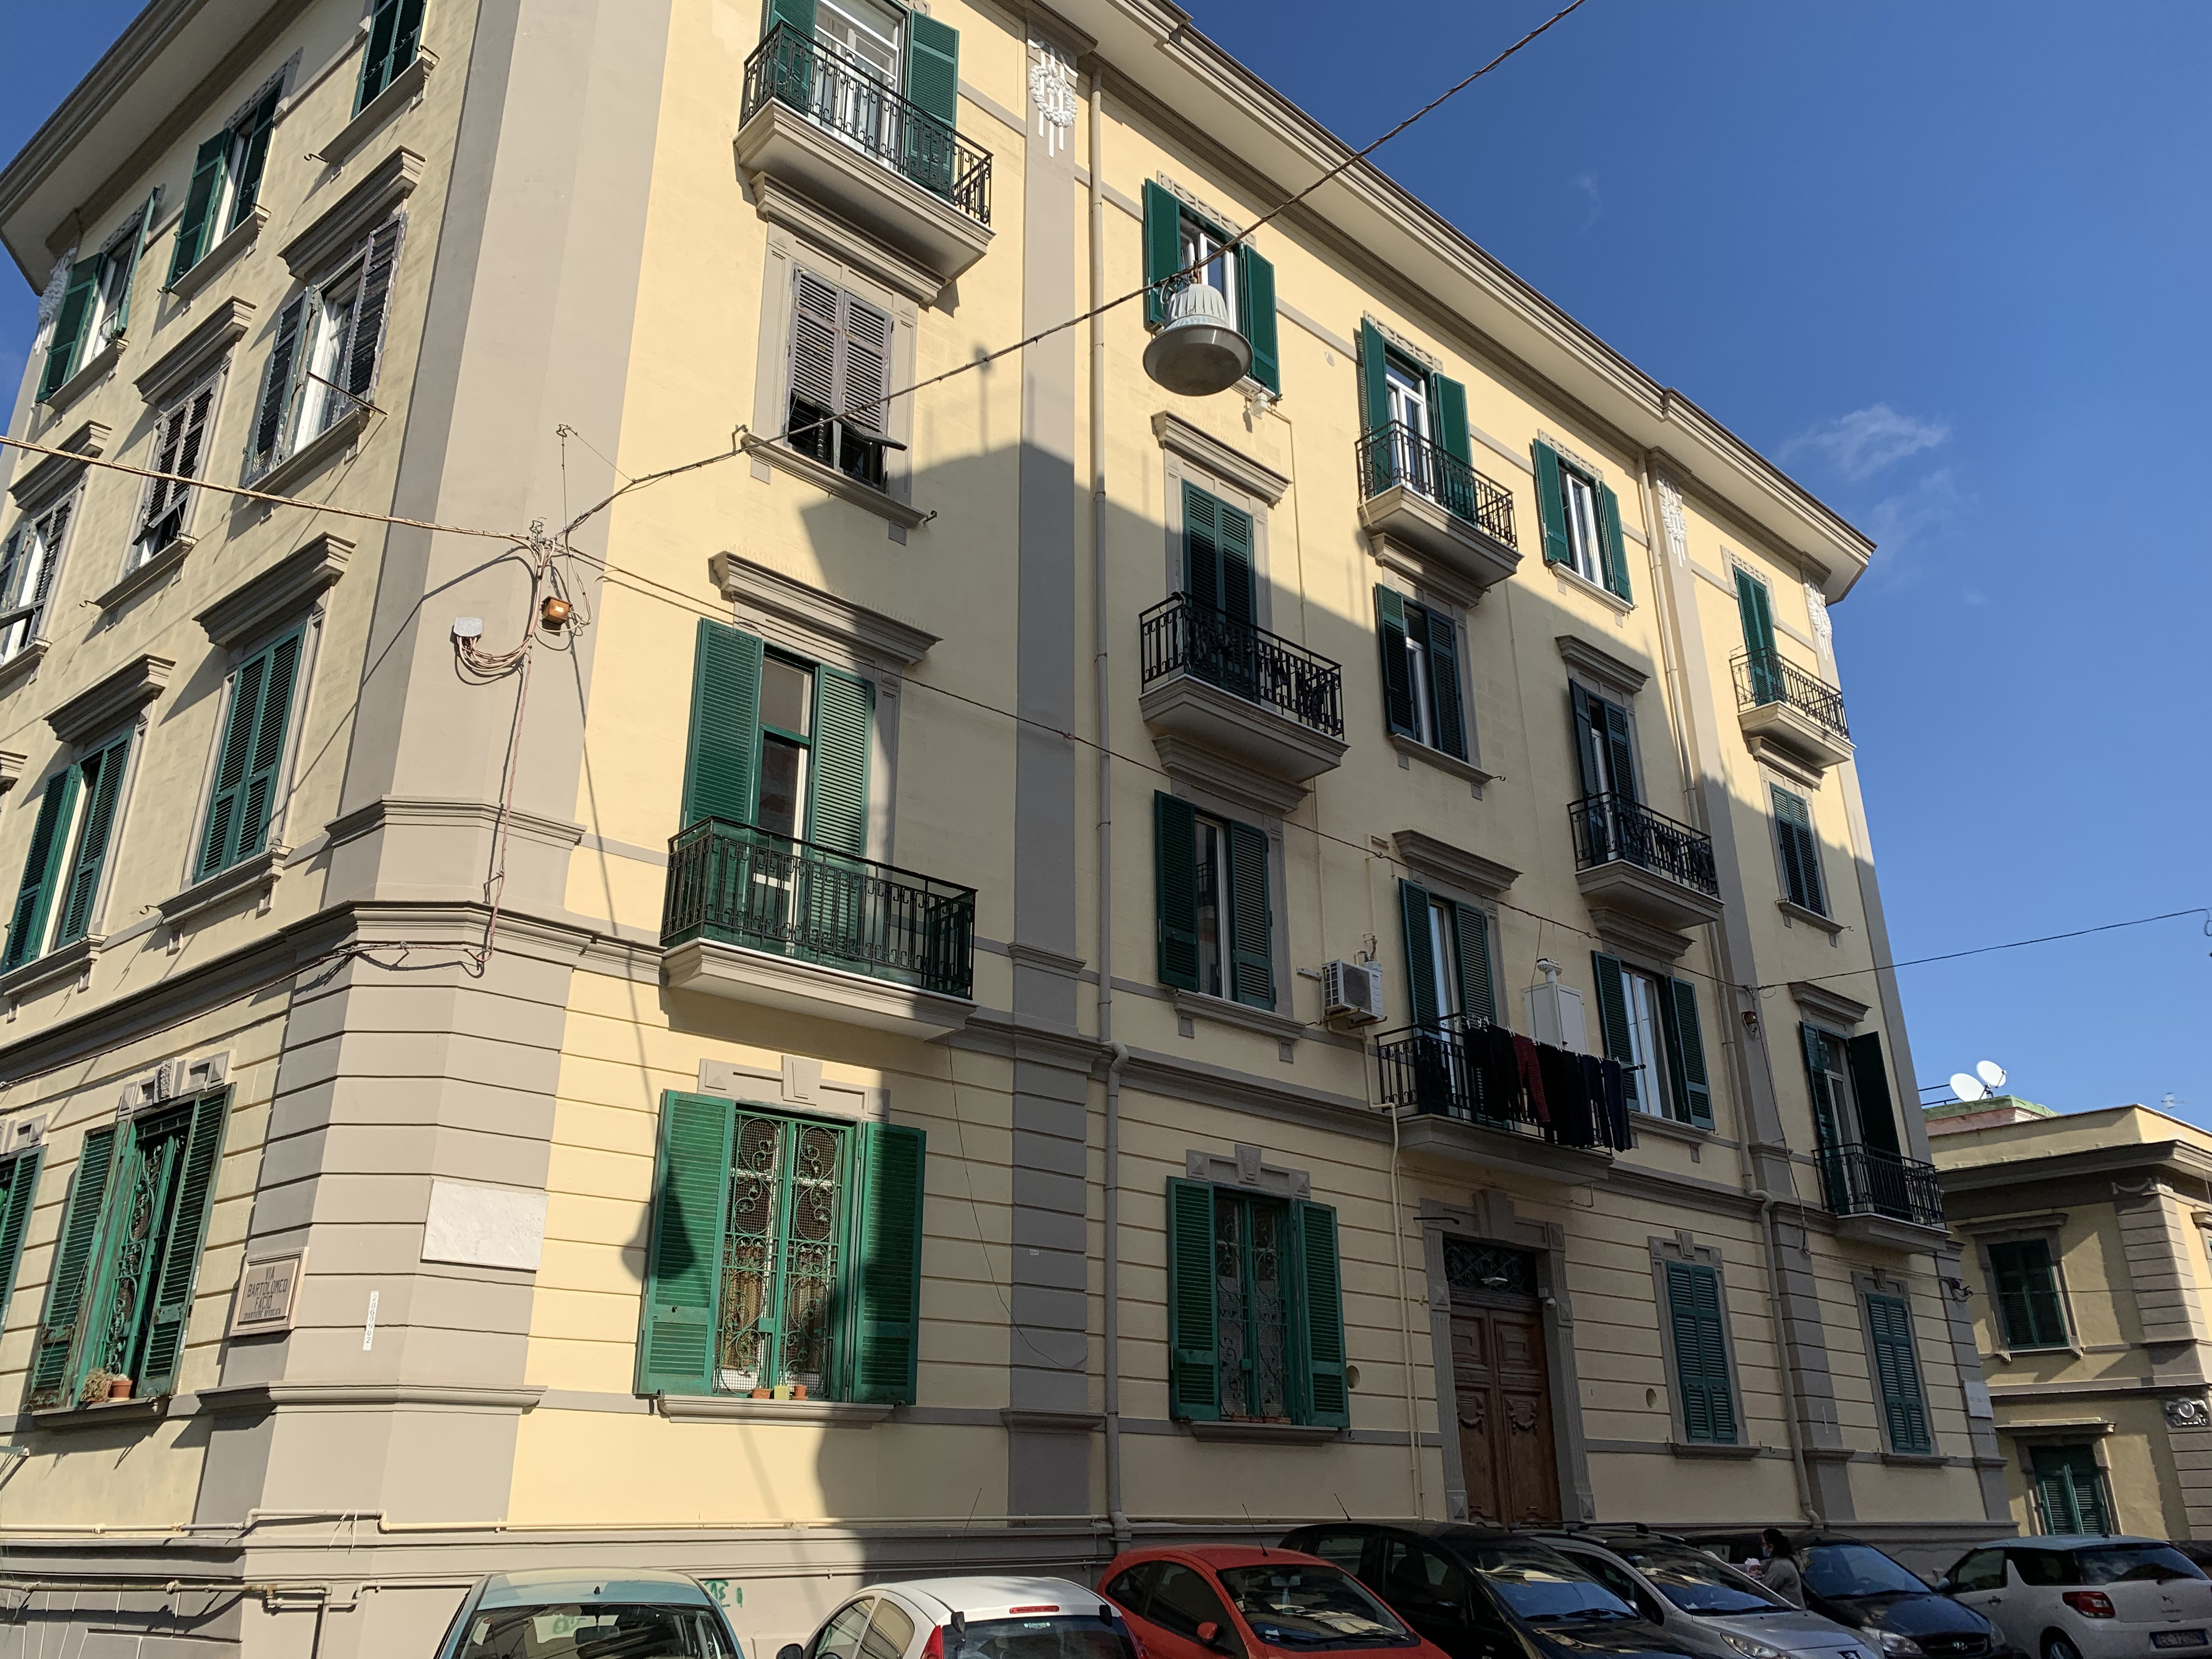 [Palazzo privato in via Antonio Ludovico Antinori, 6] (palazzo, privato) - Napoli (NA)  (XX; XX)